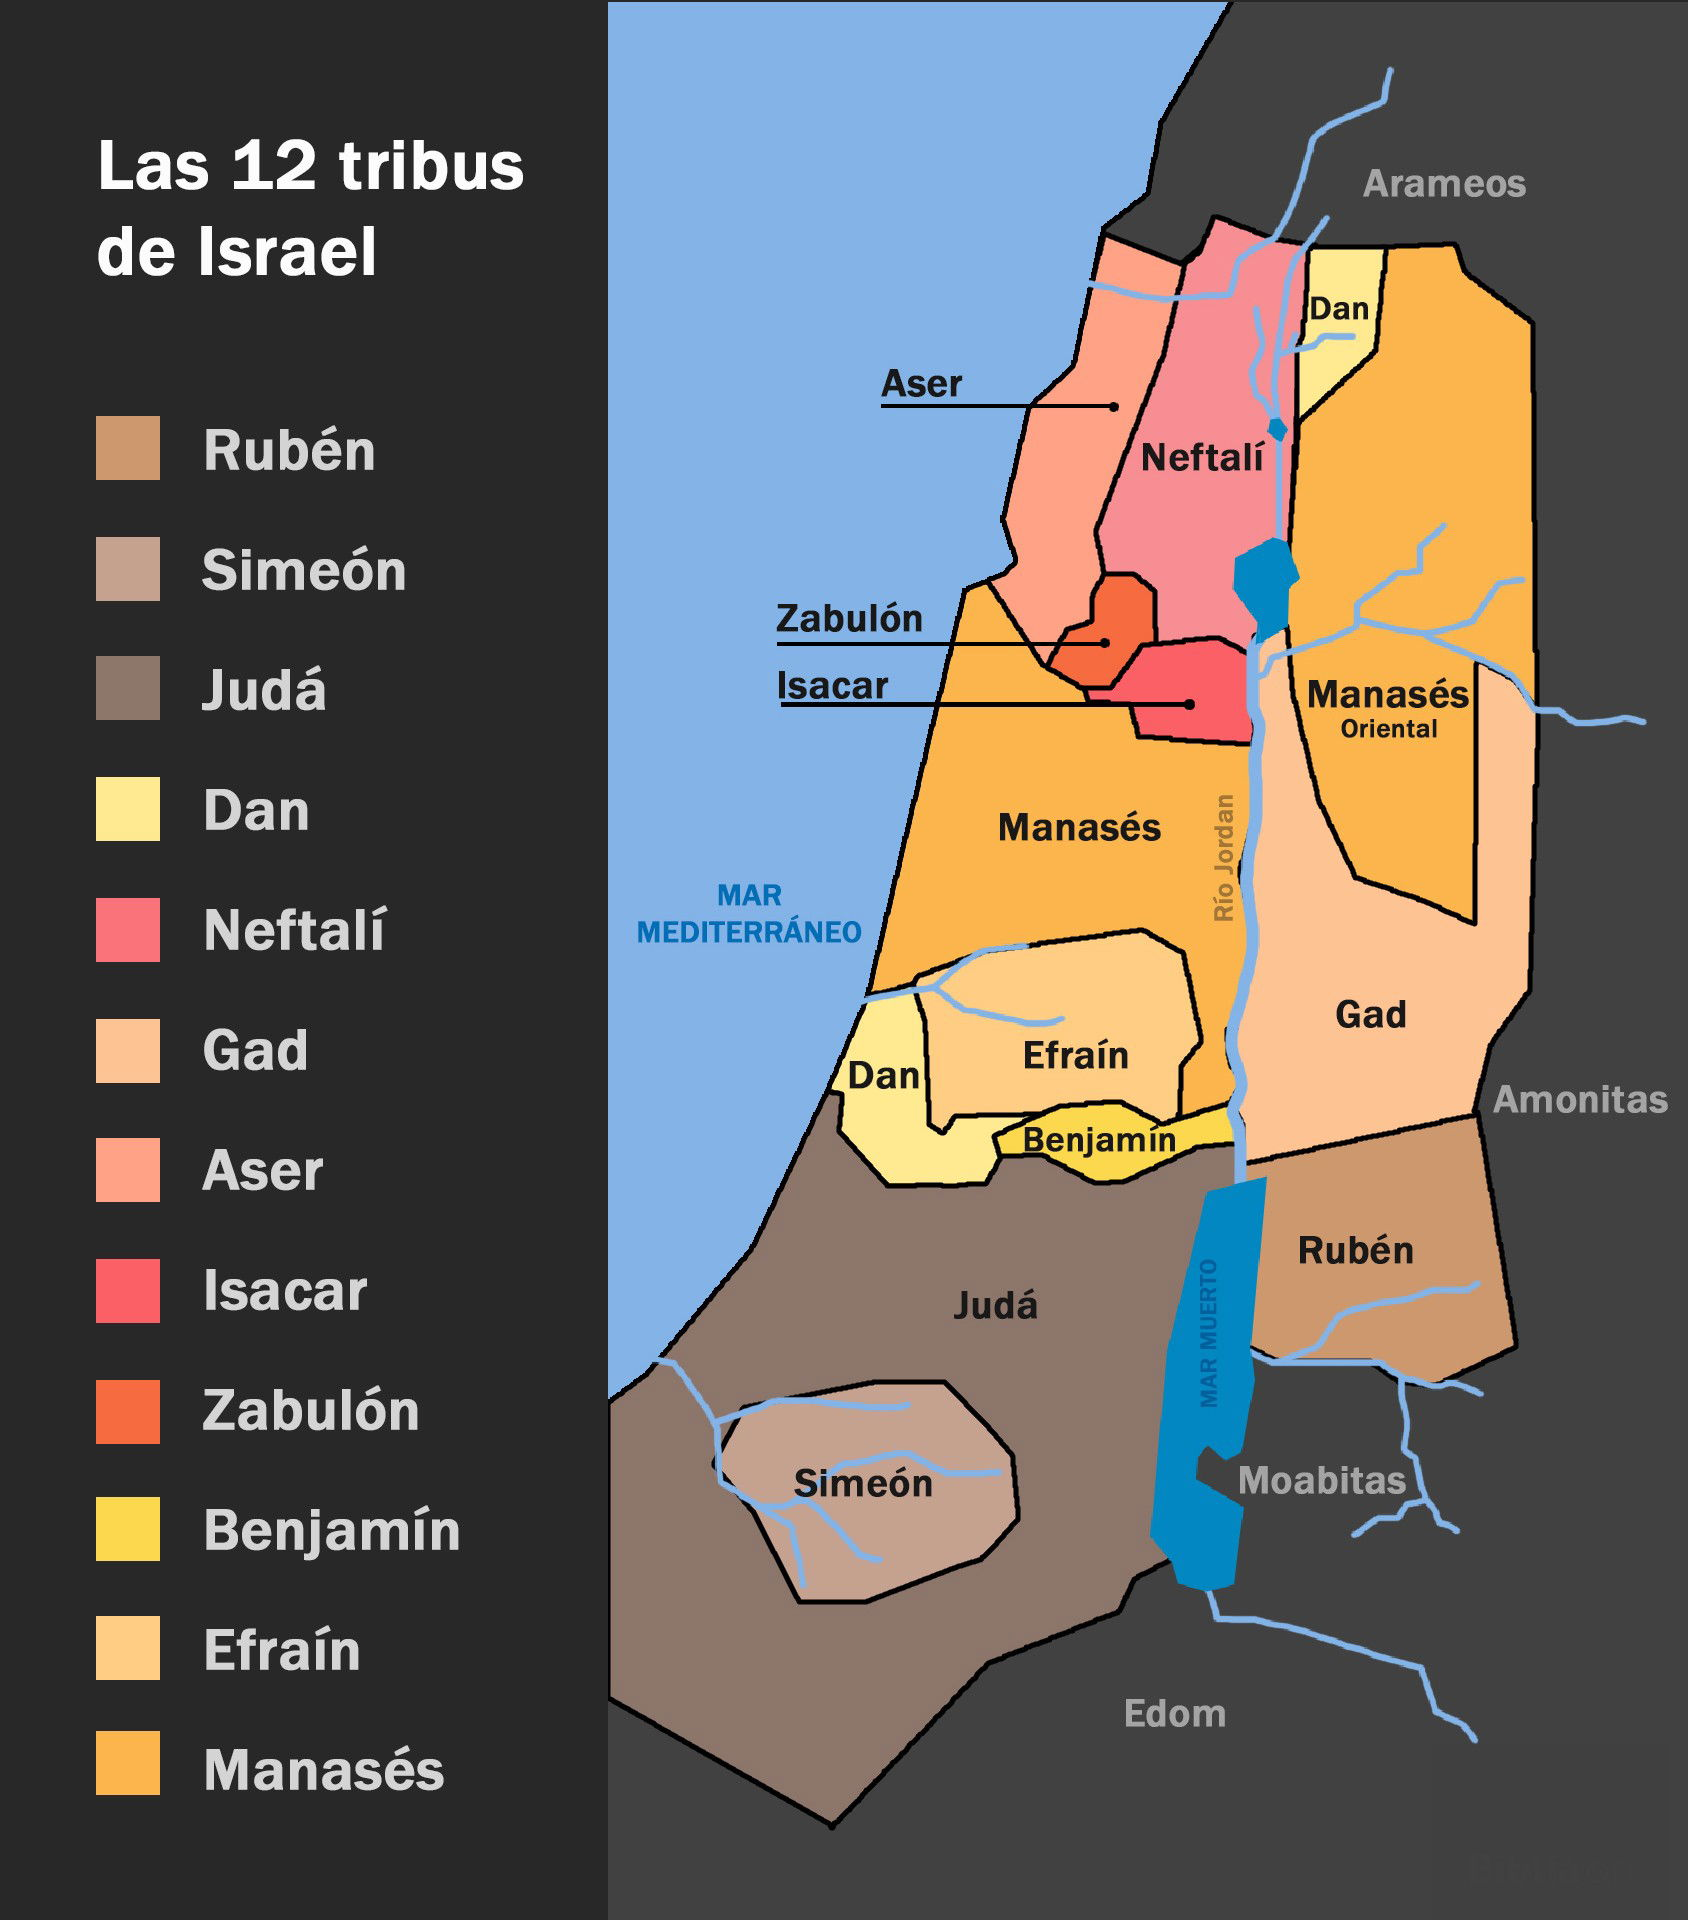 Las 12 tribus de Israel